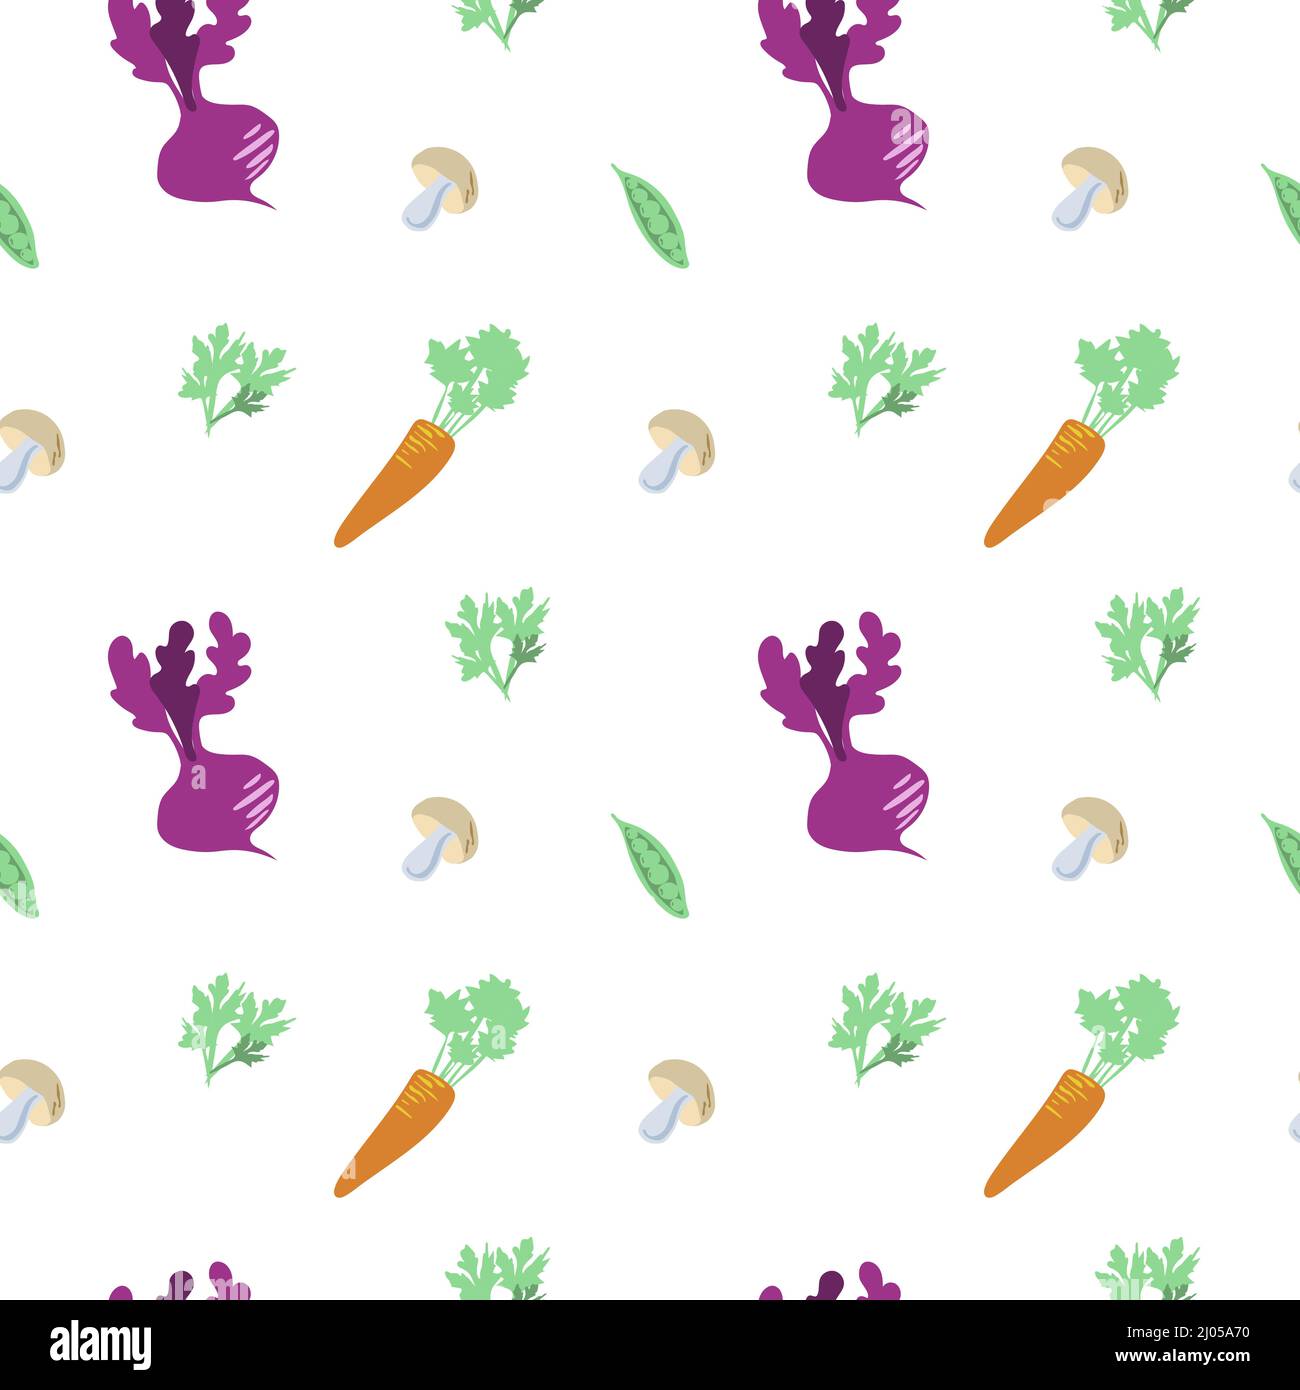 Nahtloses Muster aus Gemüse, Pilzen und Grüns auf weißem Hintergrund. Elemente in einem reduzierten Stil. Welternährungstag. Gemüse und Gemüse. Rüben, Stock Vektor